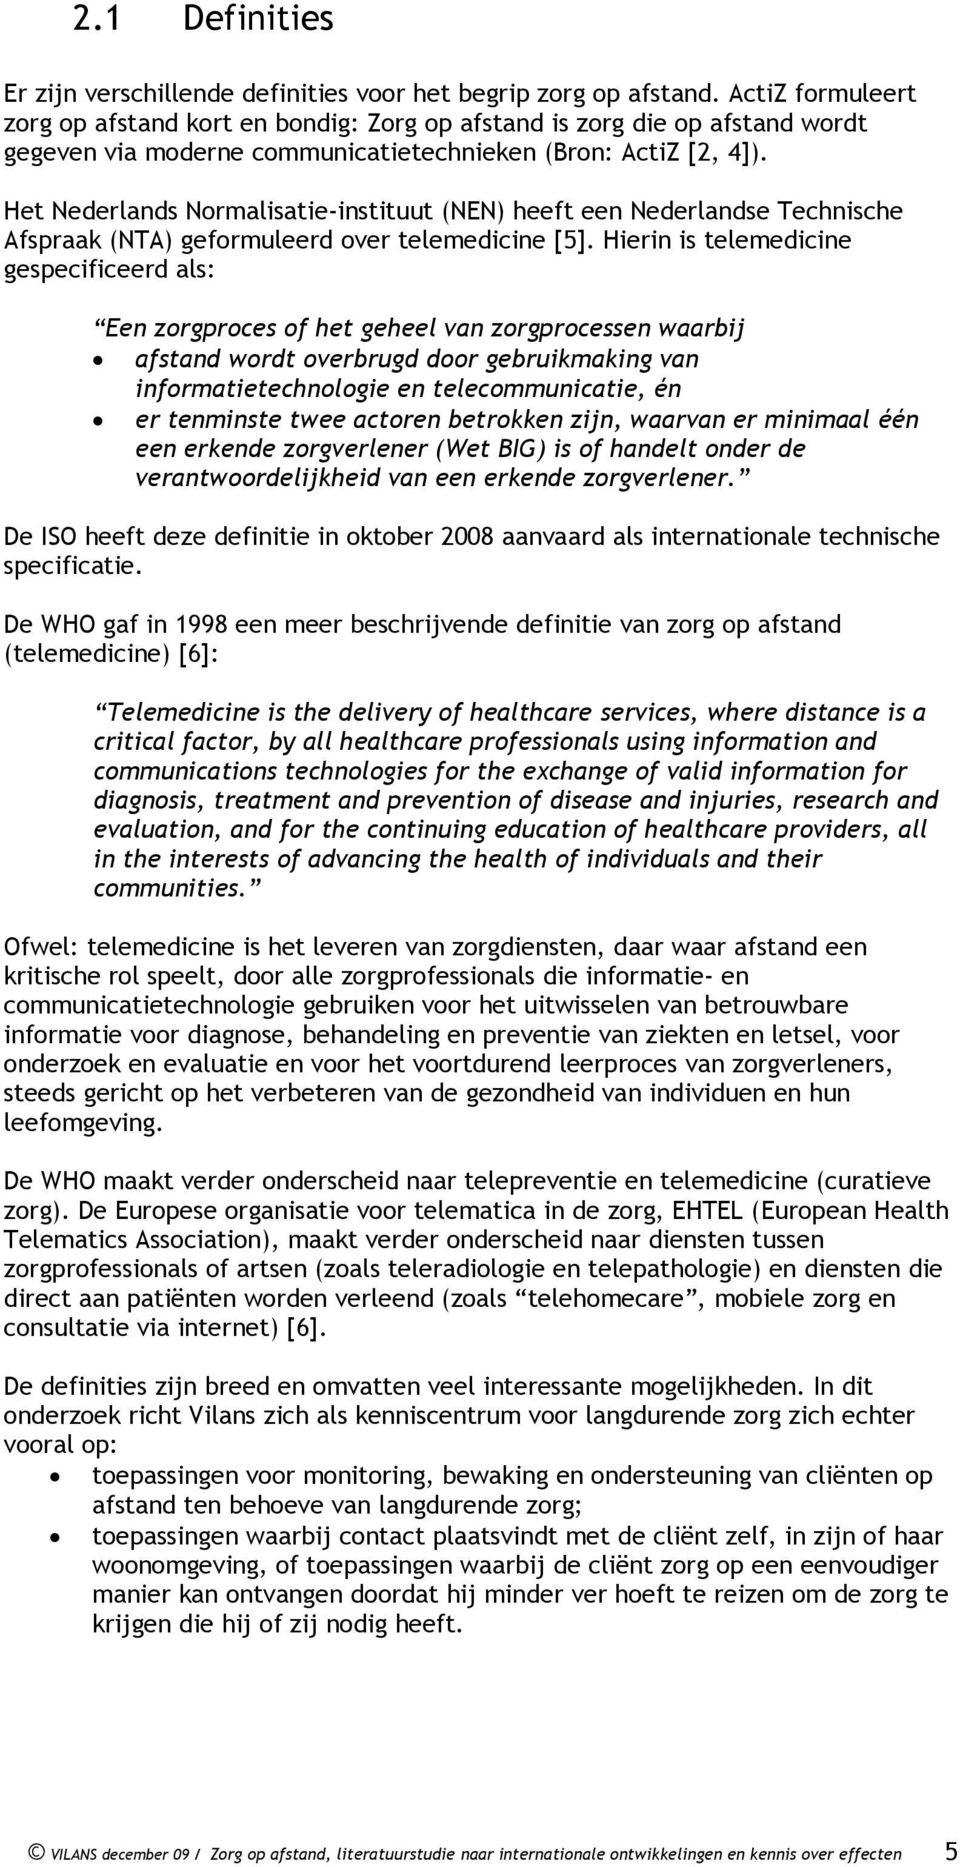 Het Nederlands Normalisatie-instituut (NEN) heeft een Nederlandse Technische Afspraak (NTA) geformuleerd over telemedicine [5].